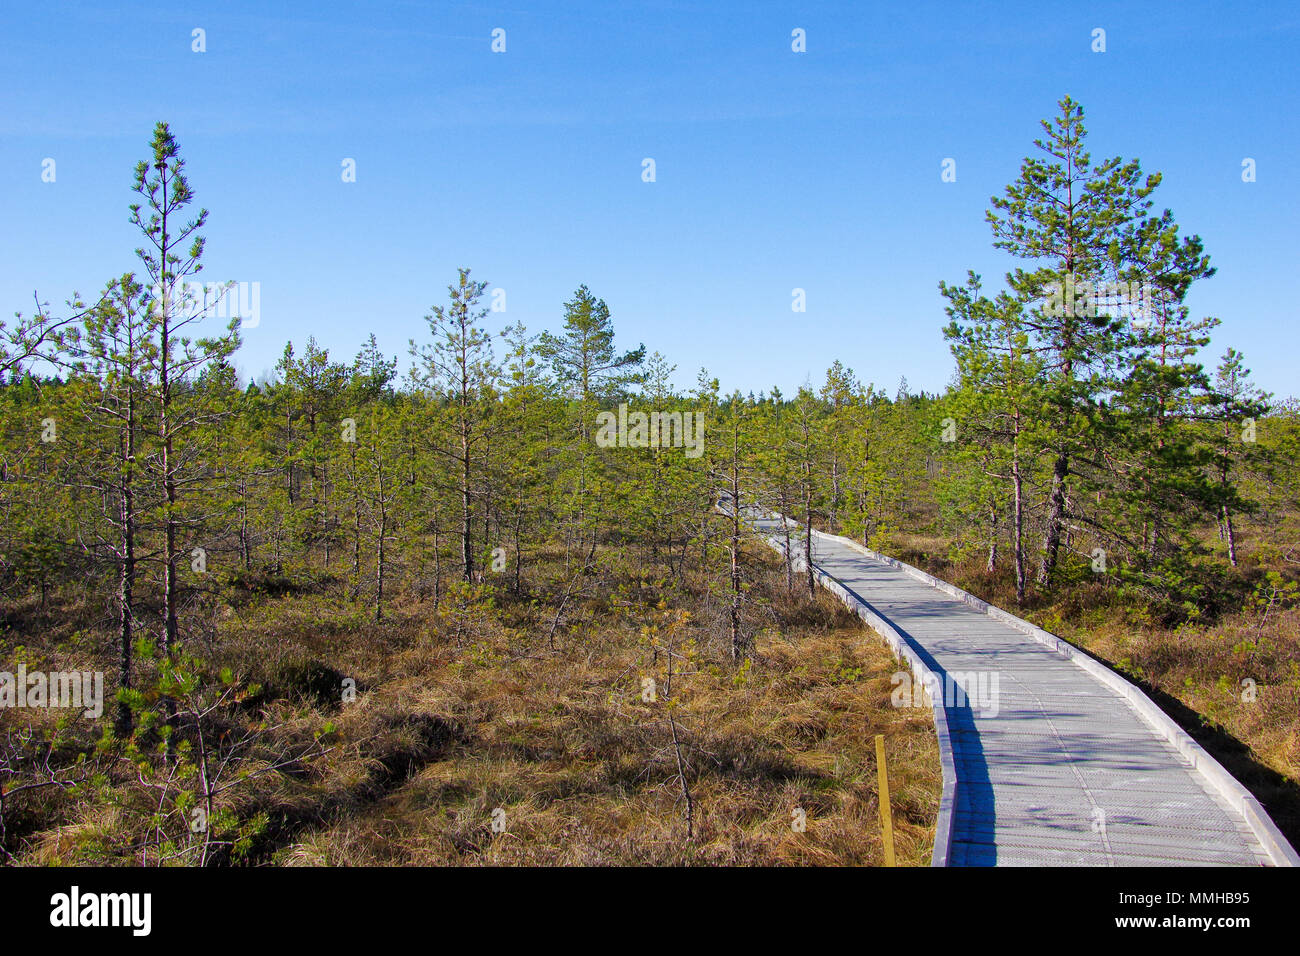 Soomaa National Park aka terra di paludi nel centro di Estonia, selvatici zone umide area che è accessibile solo su passerelle che portano gli escursionisti attraverso le paludi Foto Stock